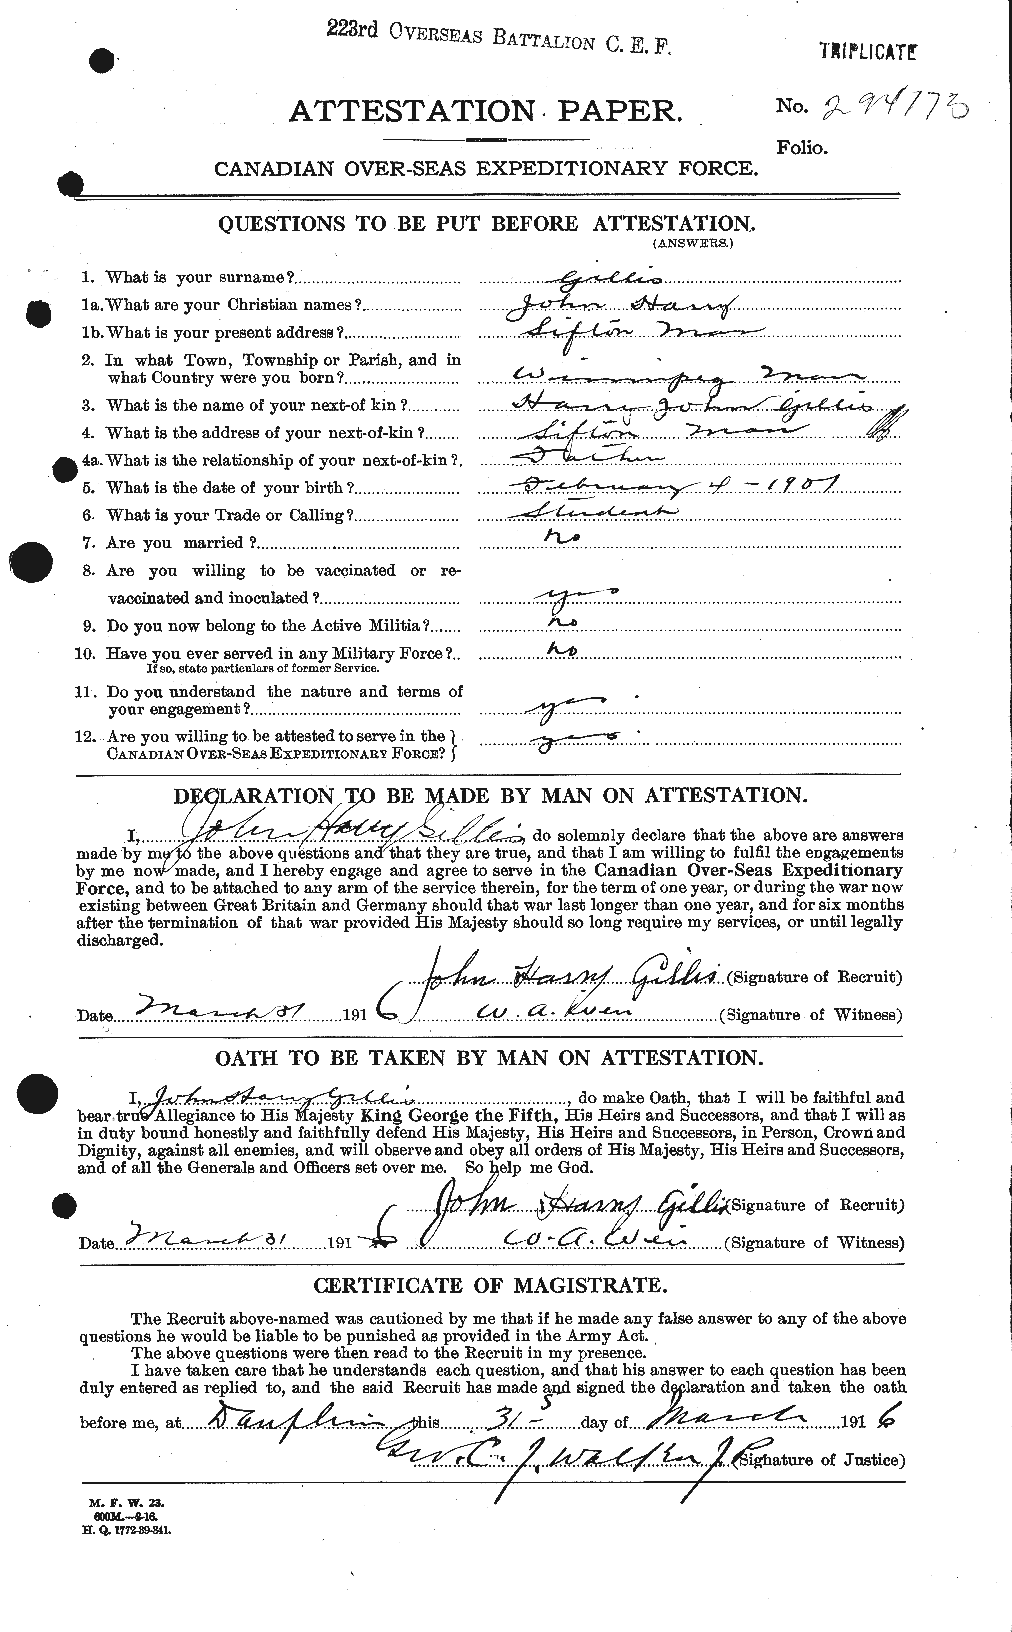 Dossiers du Personnel de la Première Guerre mondiale - CEC 348065a